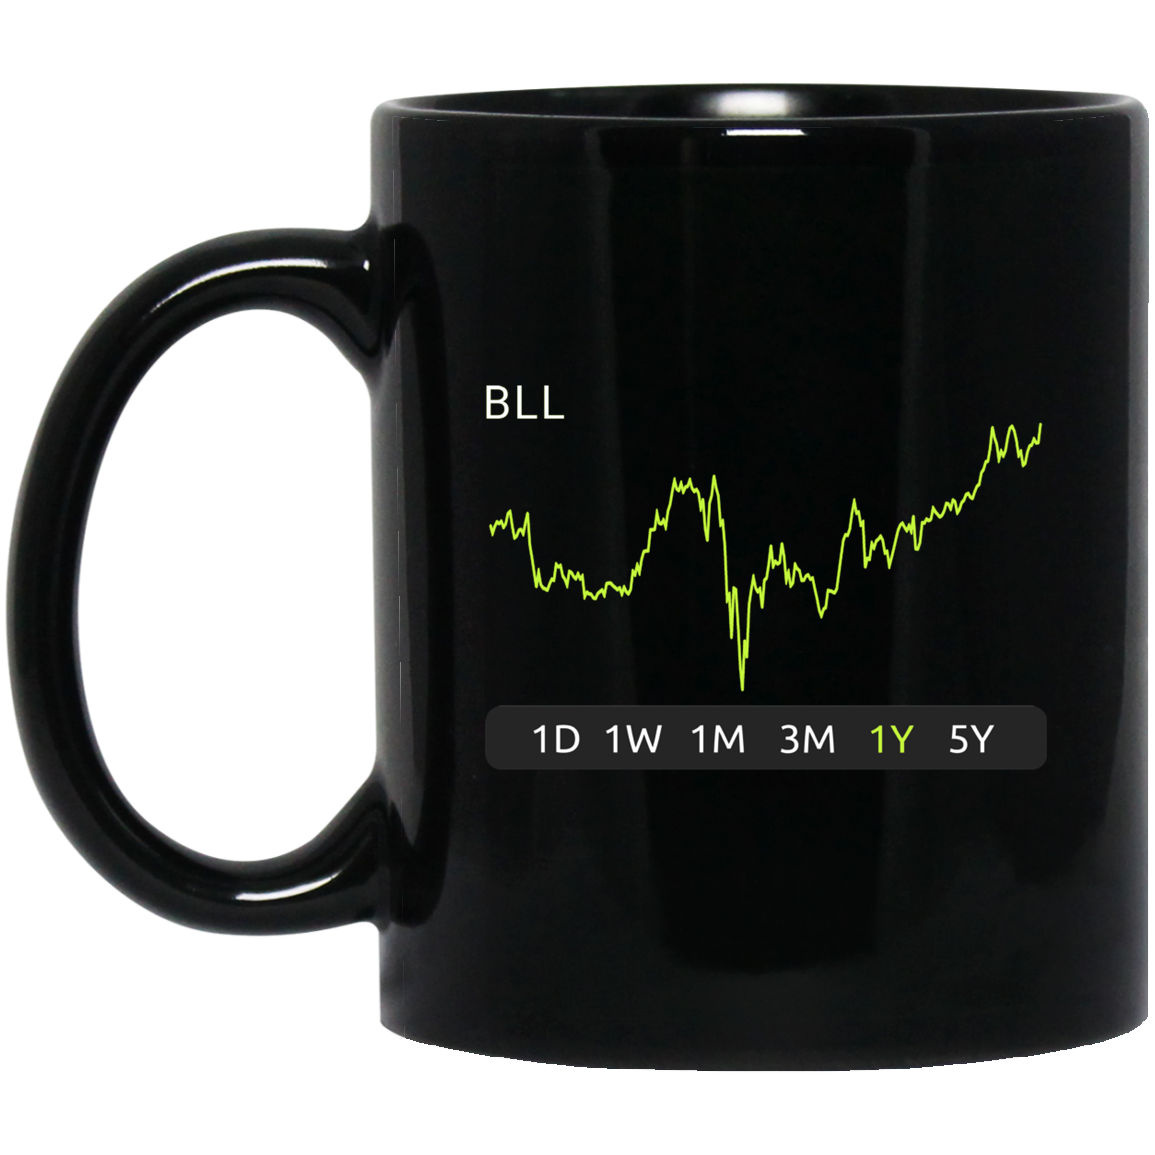 BLL Stock 1y Mug